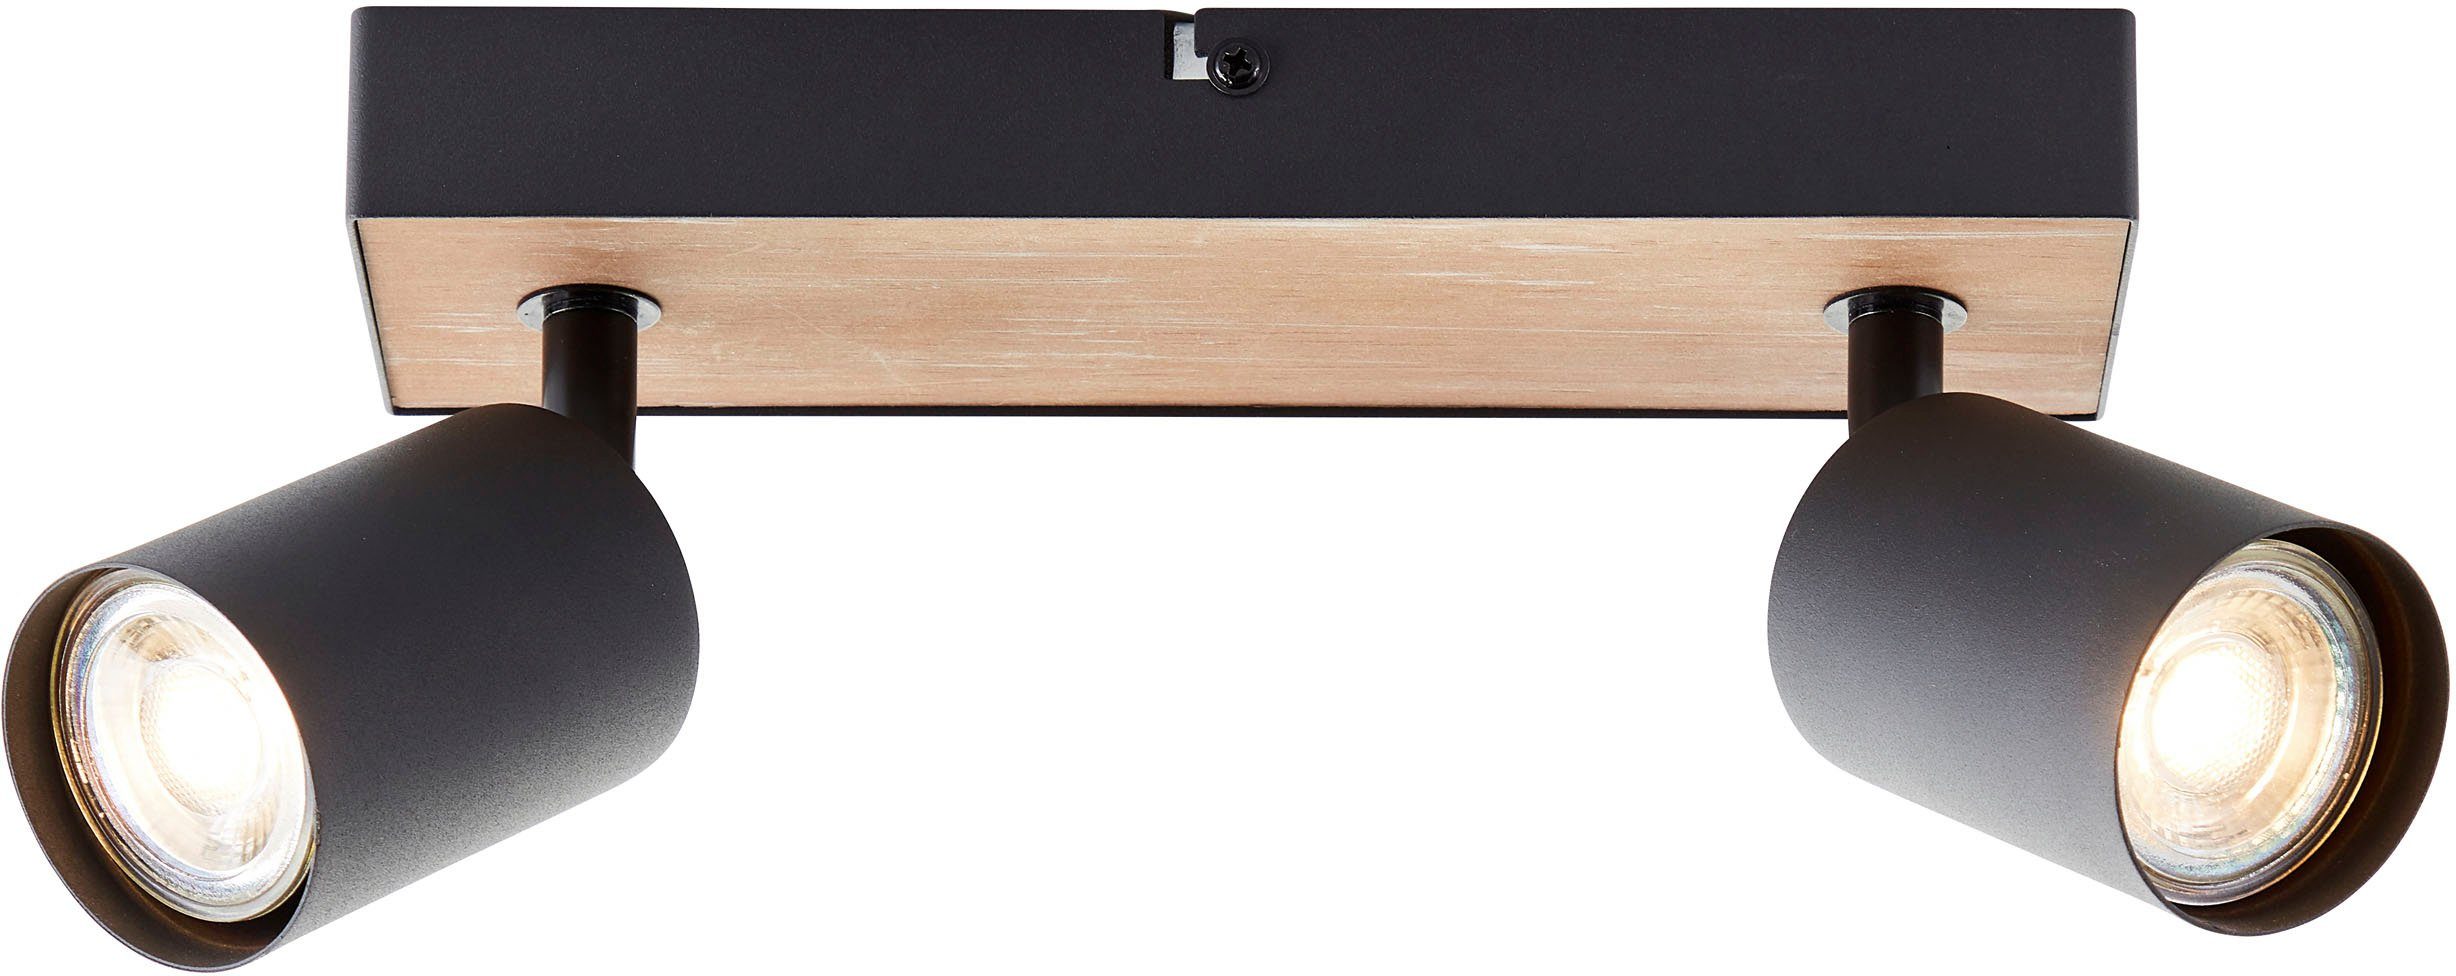 Brilliant Deckenstrahler Jello Wood, LED wechselbar, Warmweiß, Spotbalken schwenkbar, 15x24x8 cm, GU10, 345lm, 3000K, Metall/Holz